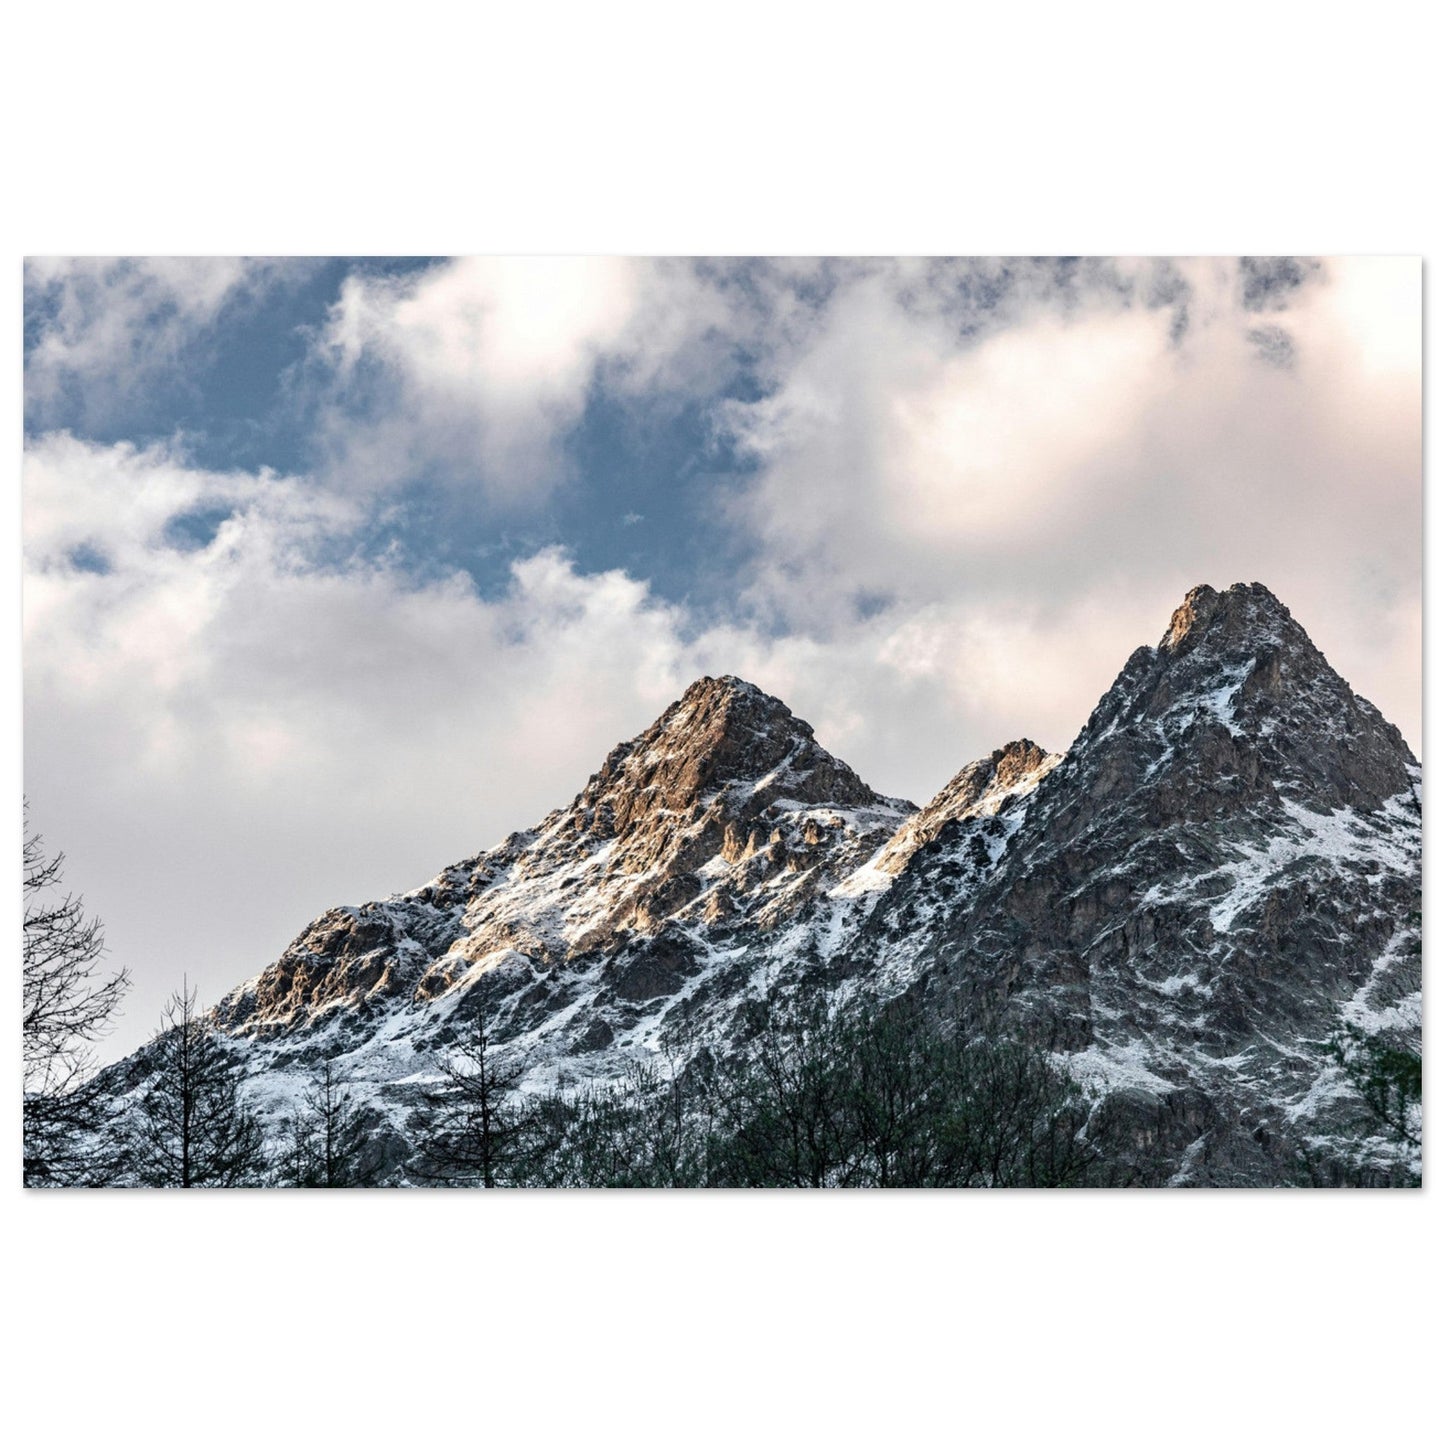 Vente Photo du Mont Clapier et de la Cime du Gélas, Vallée des merveilles, Mercantour - Tableau photo alu montagne